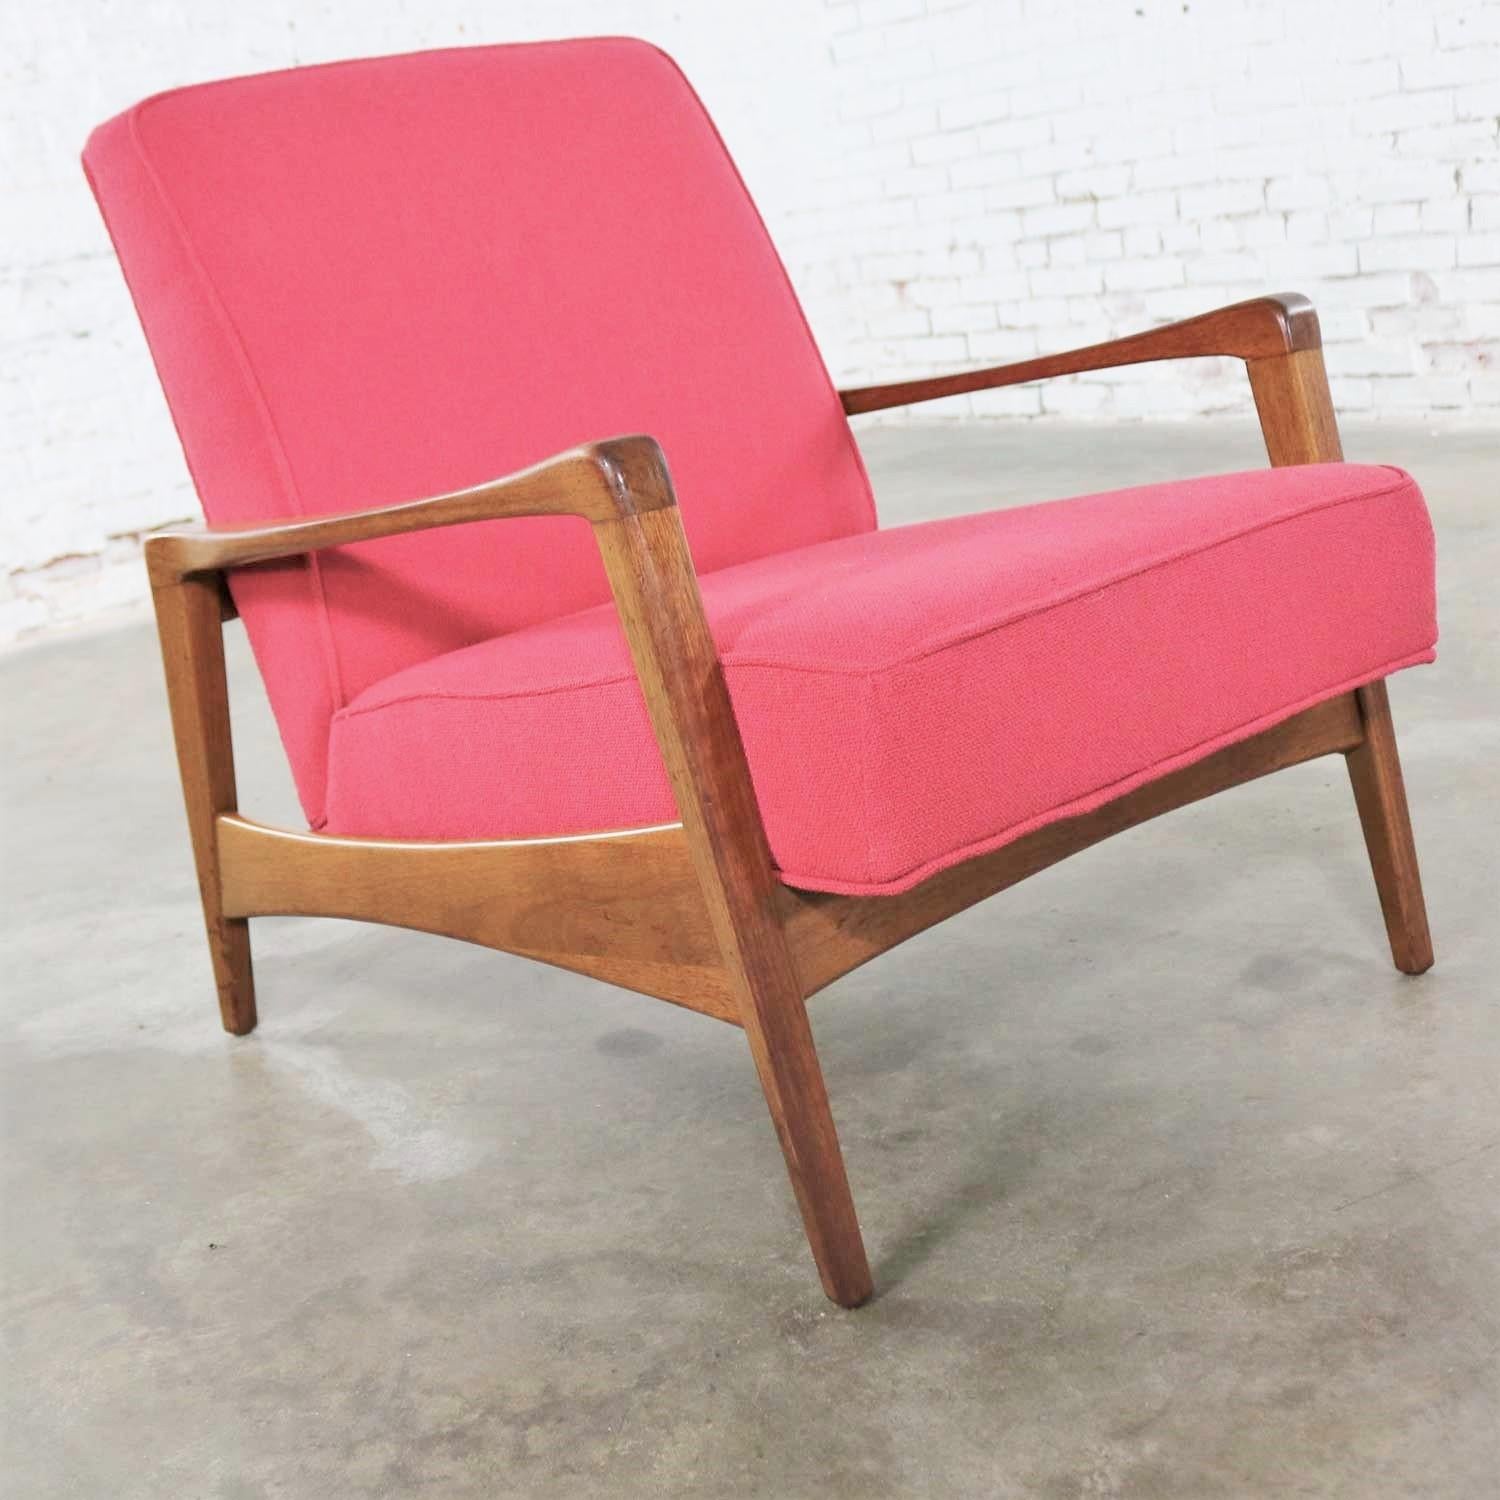 Schöner Vintage Mid-Century Modern 5476 Lounge Chair, entworfen von George Nelson für Herman Miller. Er befindet sich in einem wunderbar restaurierten Zustand, da er neu aufgearbeitet und gepolstert wurde. Es hat noch eine warme Alterspatina. Siehe